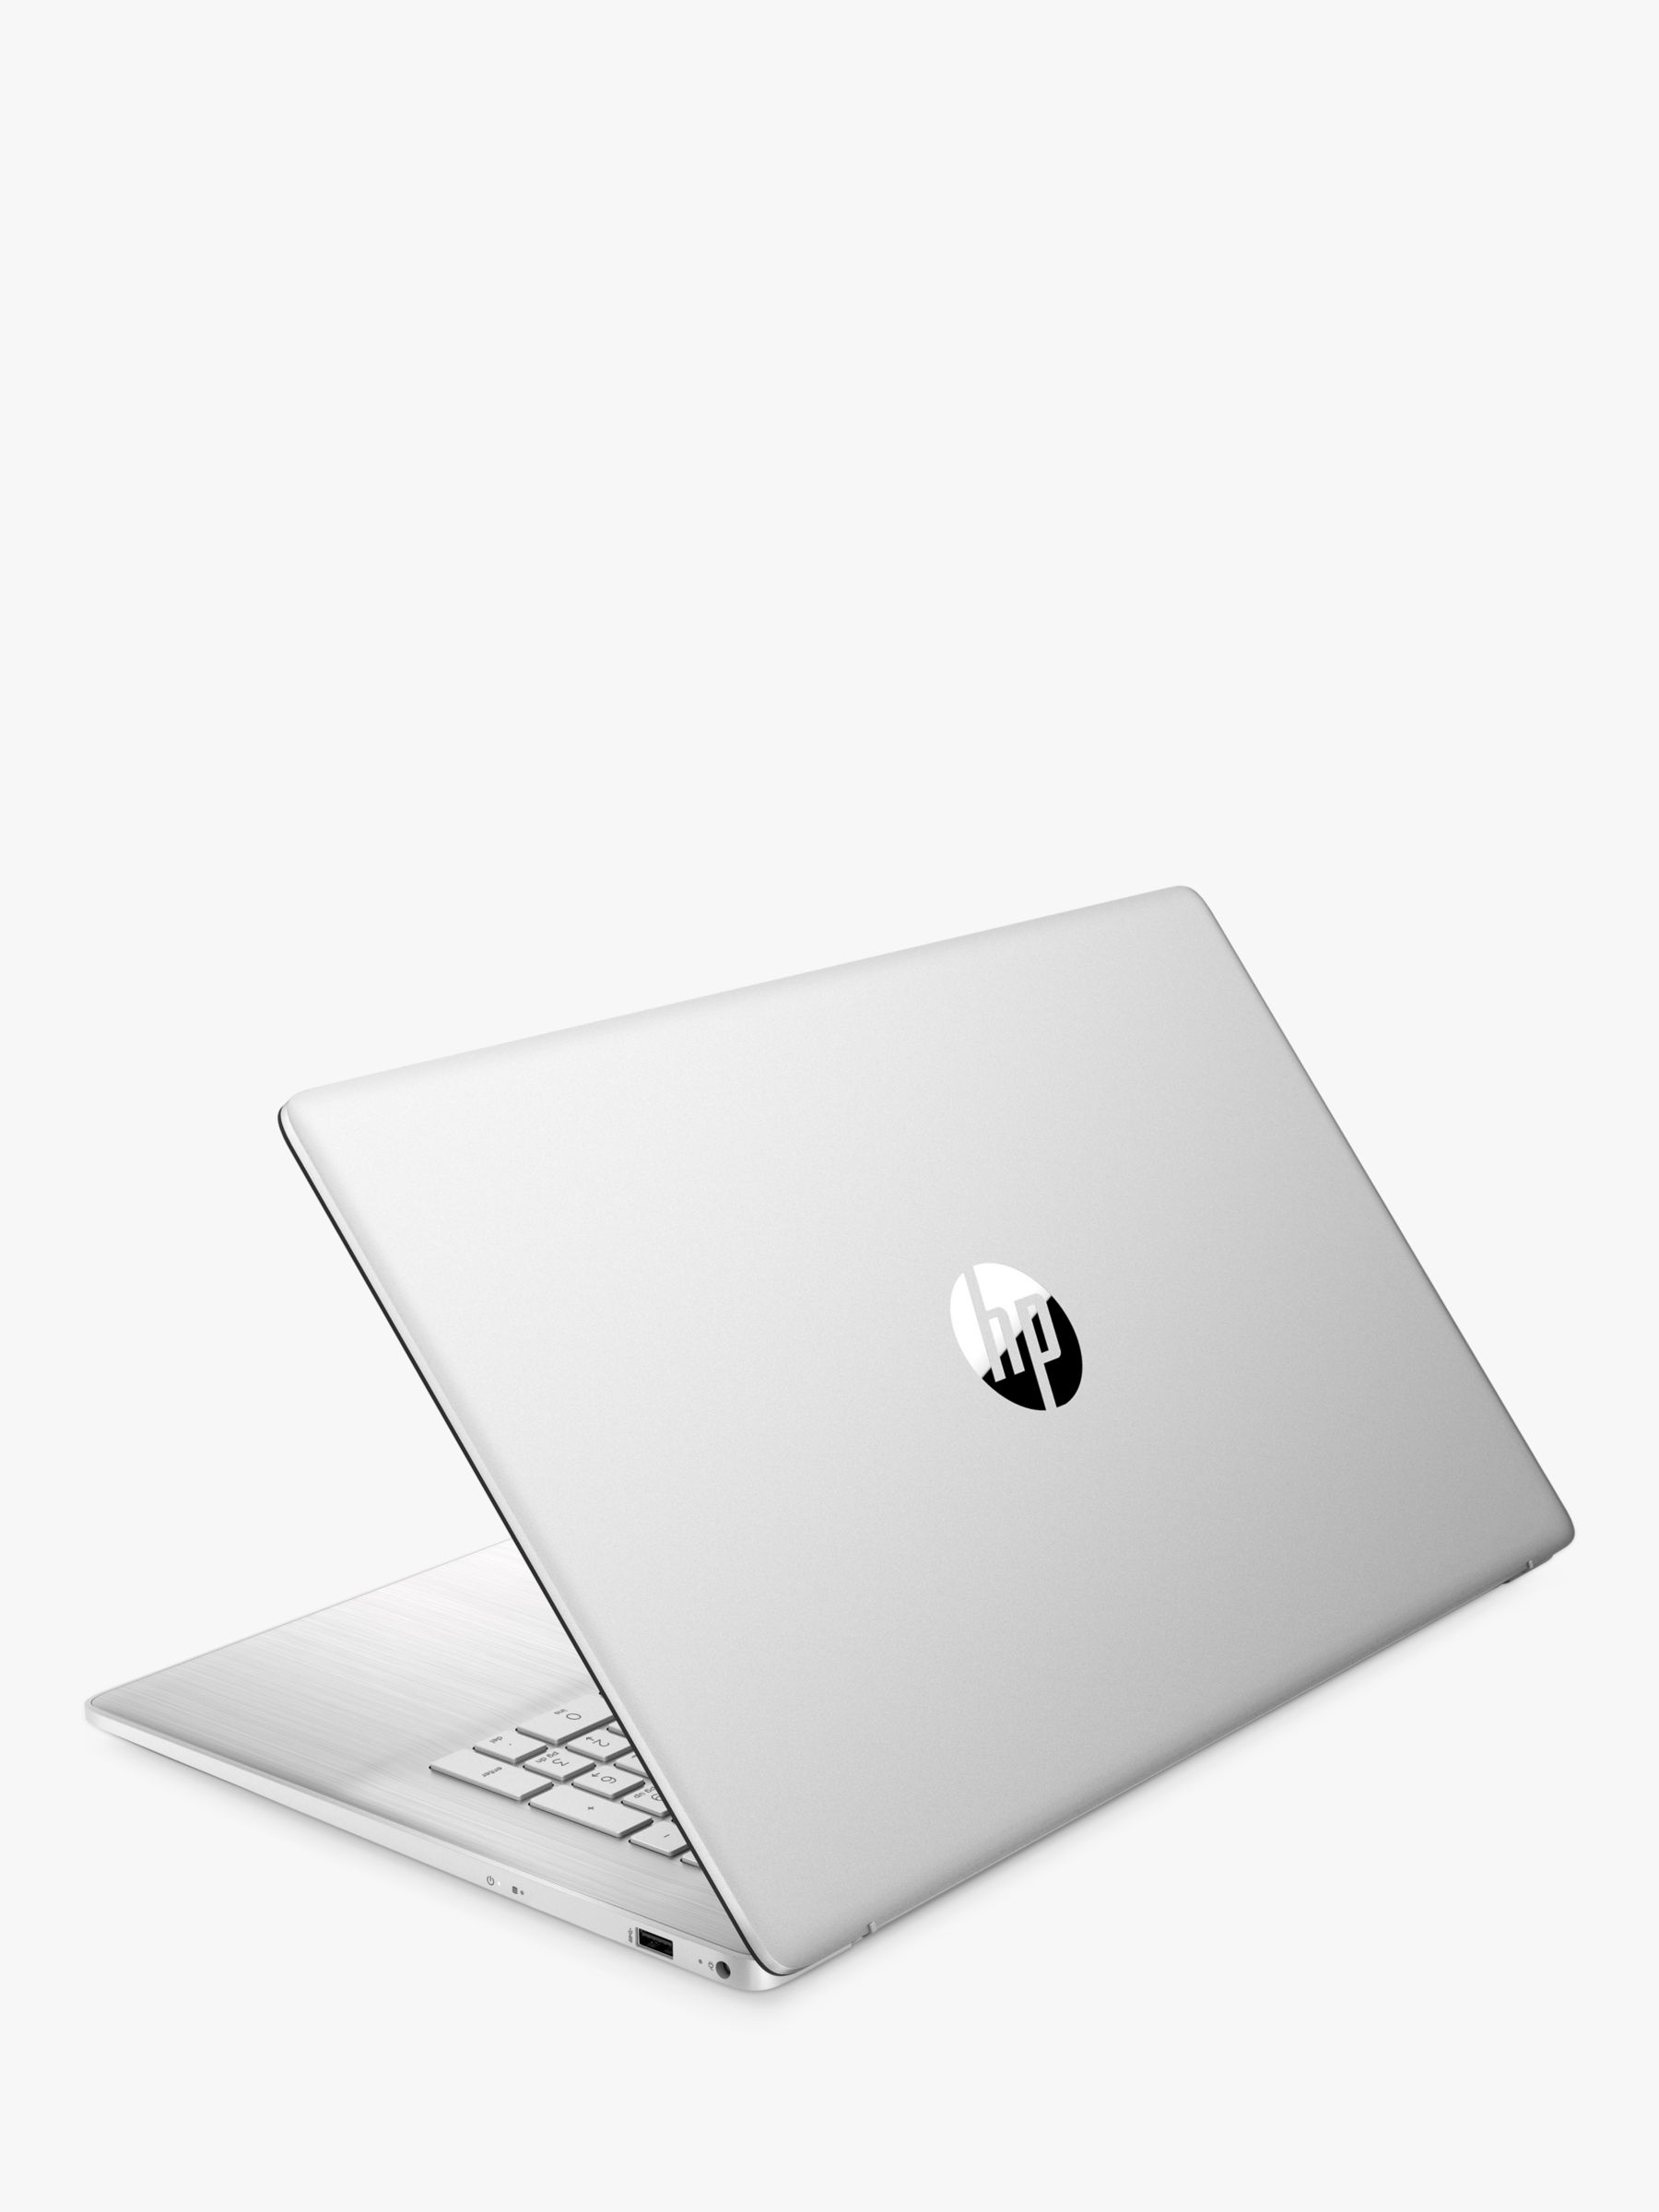 HP 17-cn0102na Laptop, Intel Core i3 Processor, 8GB RAM, 128GB SSD